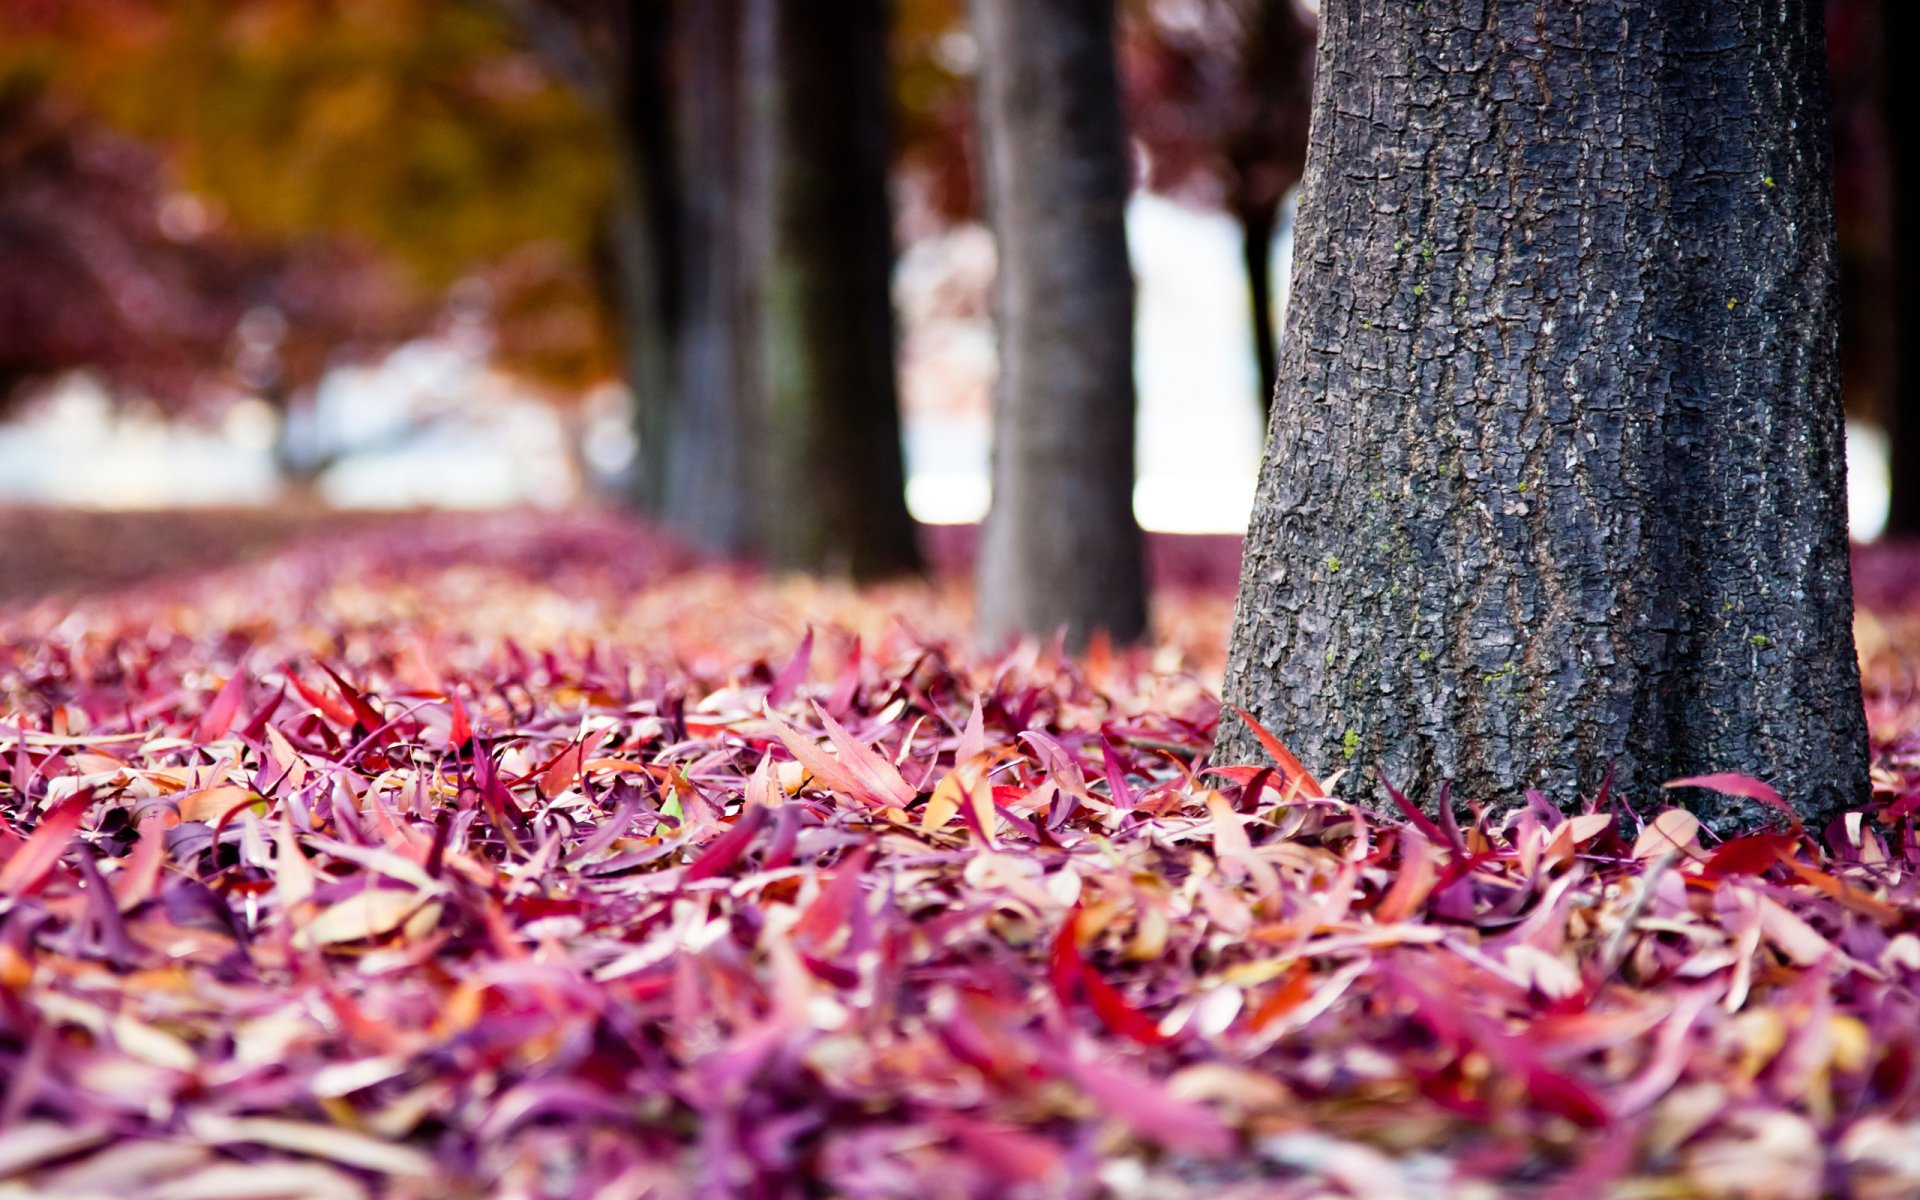 деревья в парке посадки стволы кора осень ворох листьев разноцветные краски листва размытость фон